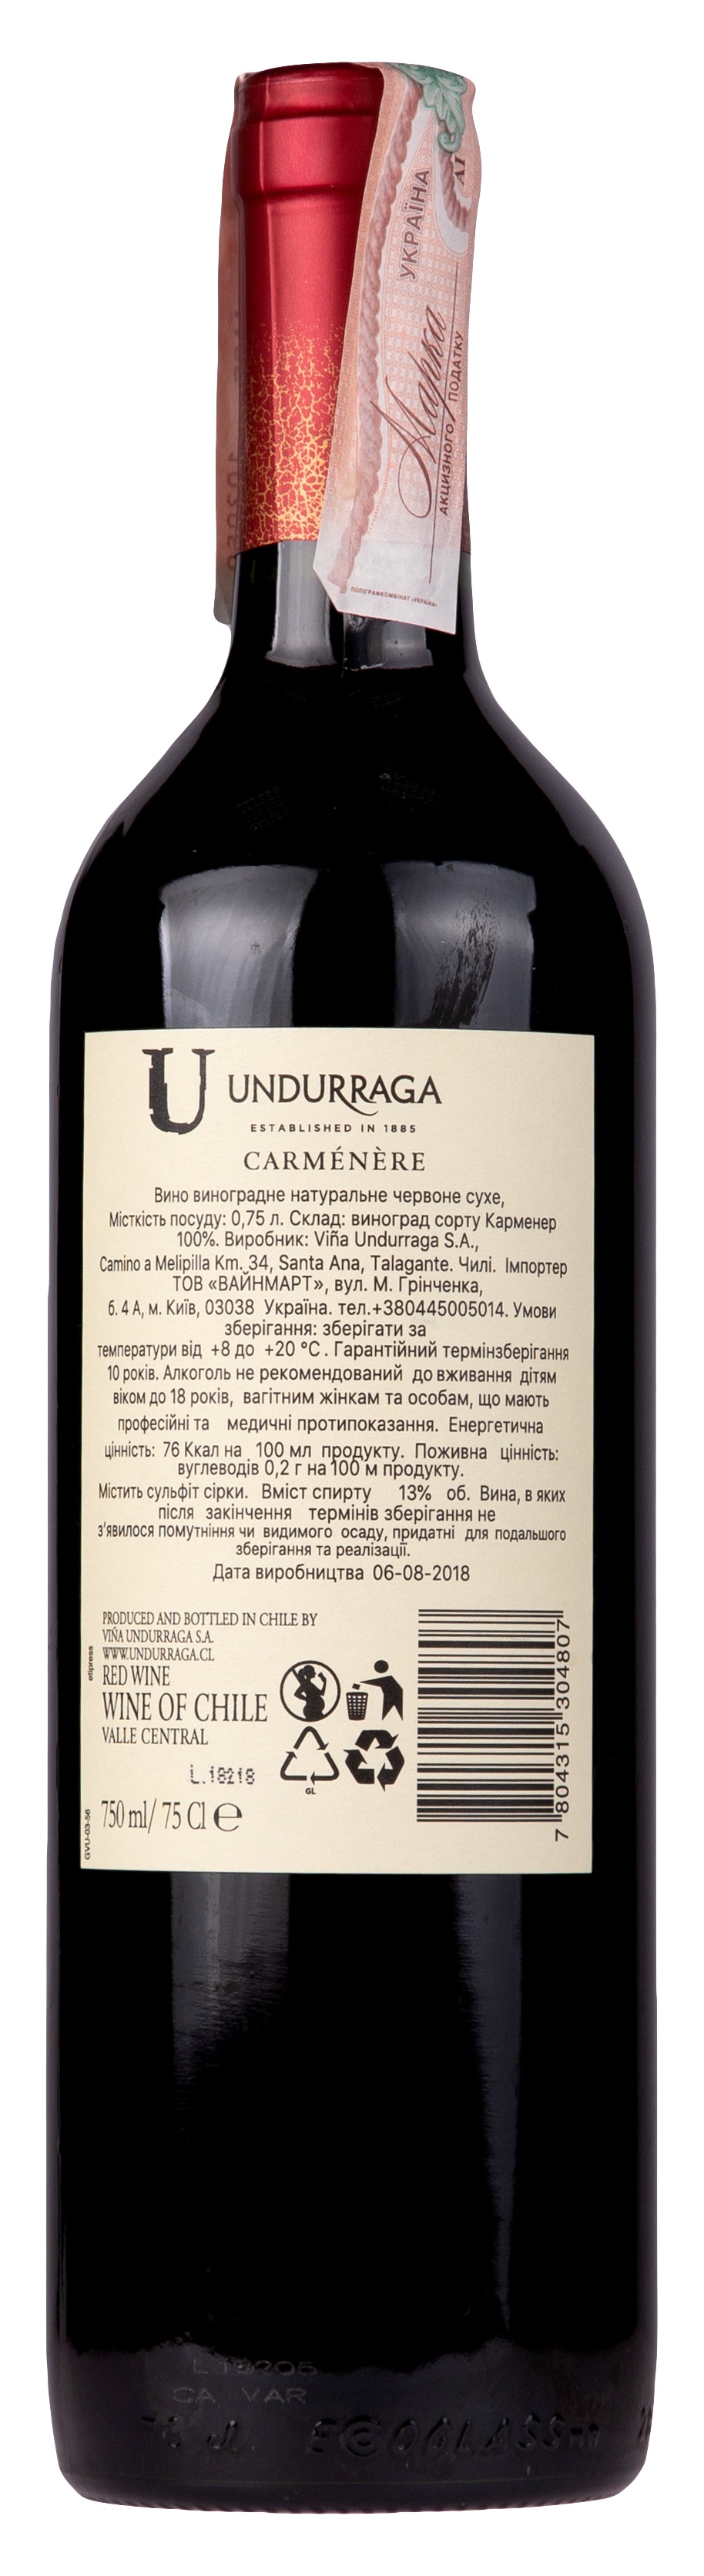 Undurraga Carmenere 2017 Set 6 bottles - 2